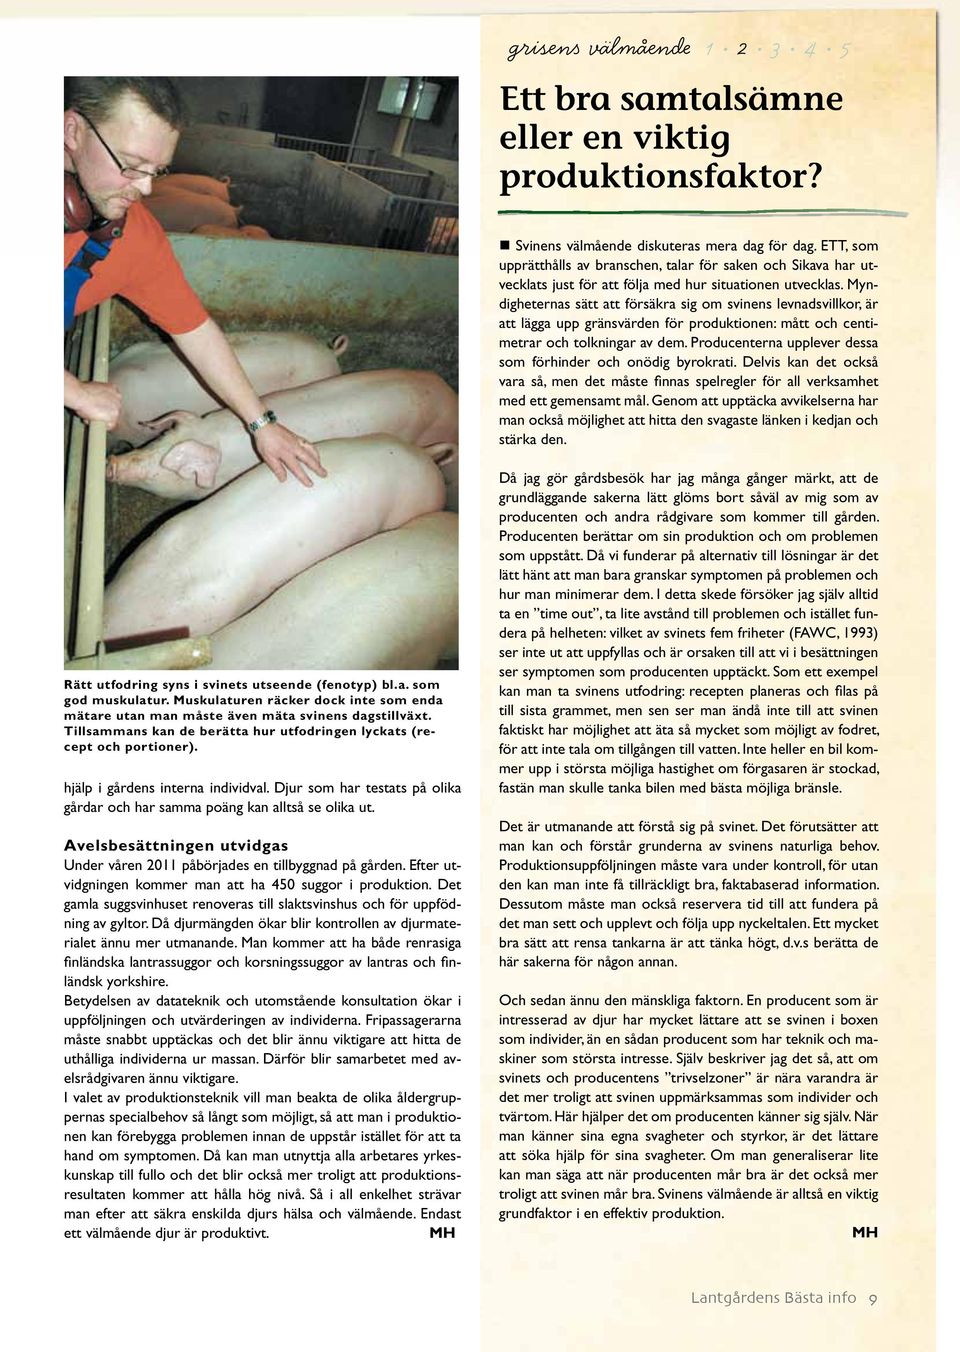 Myndigheternas sätt att försäkra sig om svinens levnadsvillkor, är att lägga upp gränsvärden för produktionen: mått och centimetrar och tolkningar av dem.